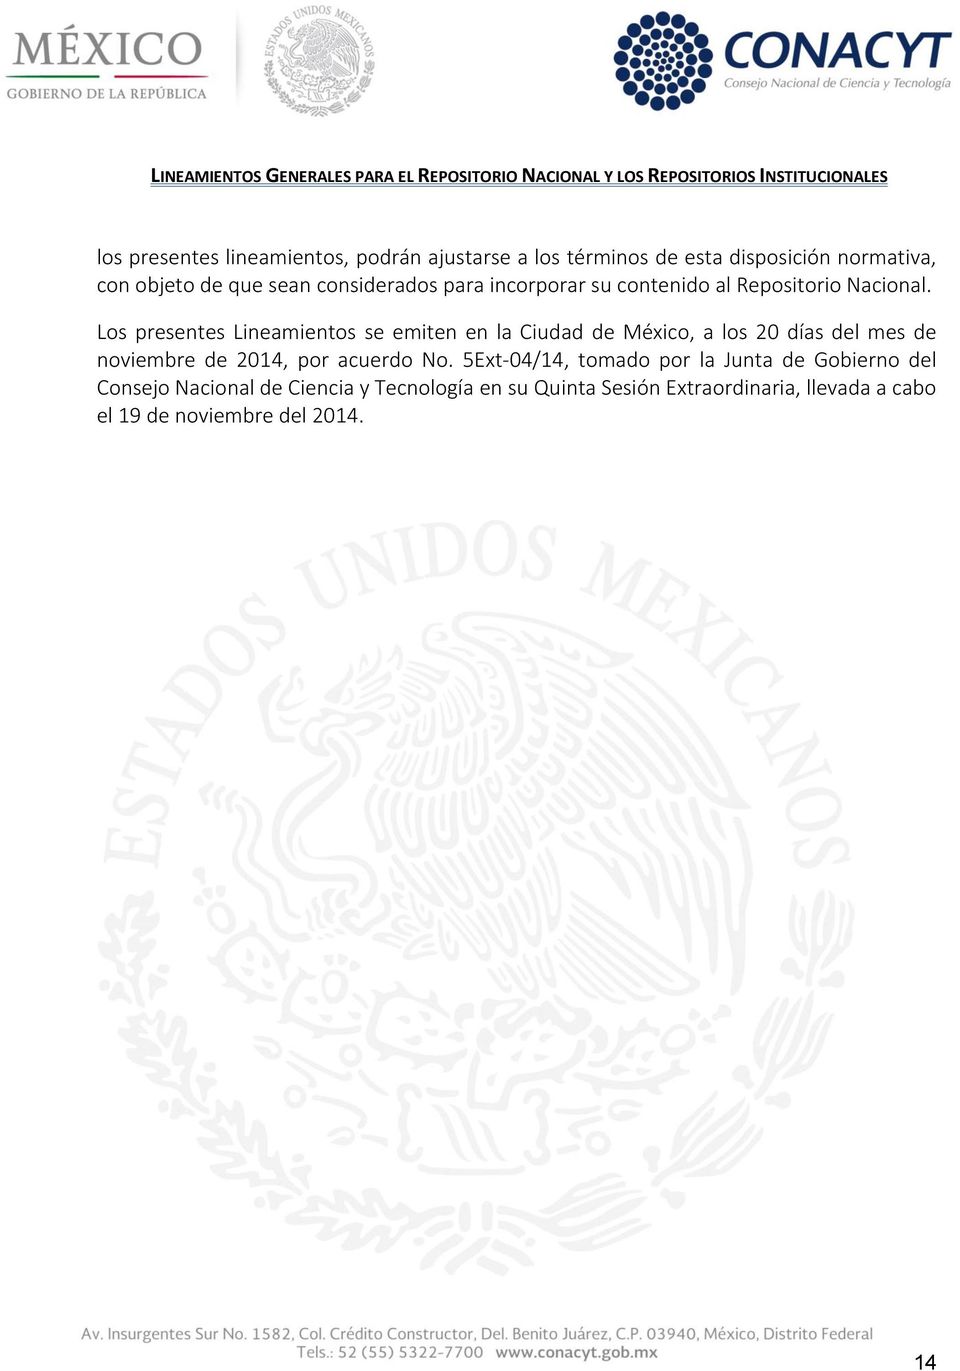 Los presentes Lineamientos se emiten en la Ciudad de México, a los 20 días del mes de noviembre de 2014, por acuerdo